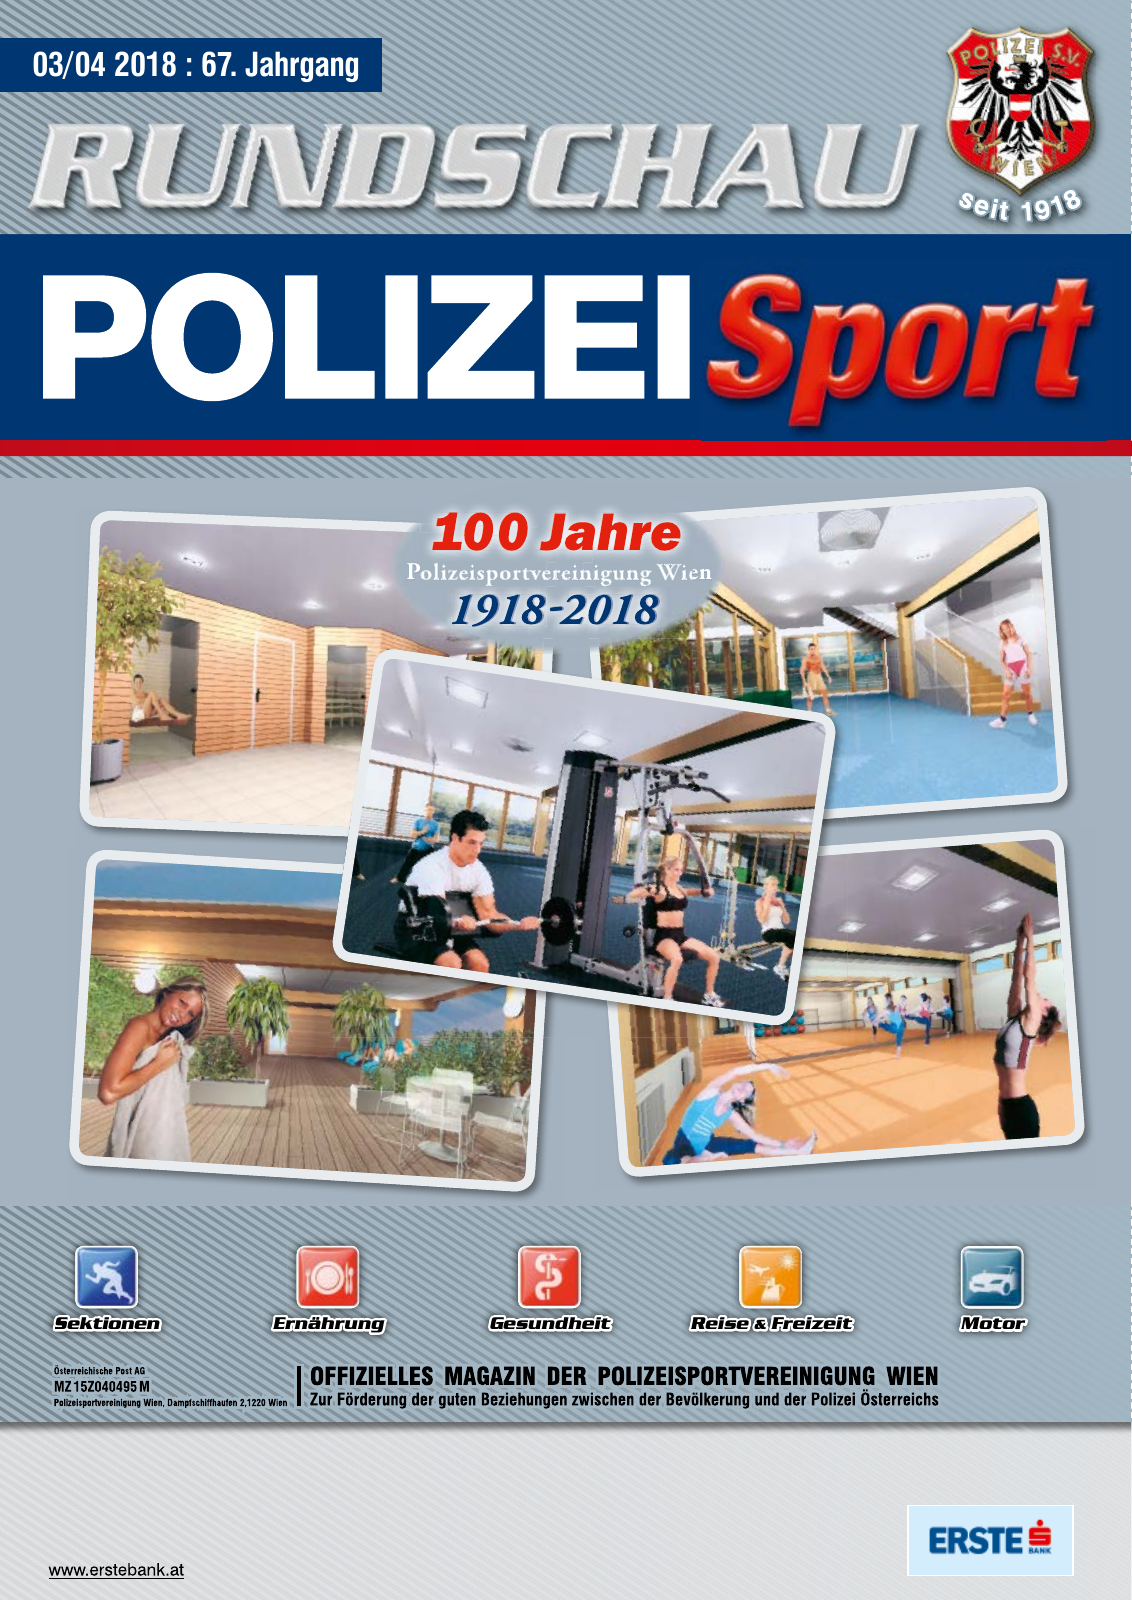 Vorschau Rundschau Polizei Sport 03-04/2018 Seite 1